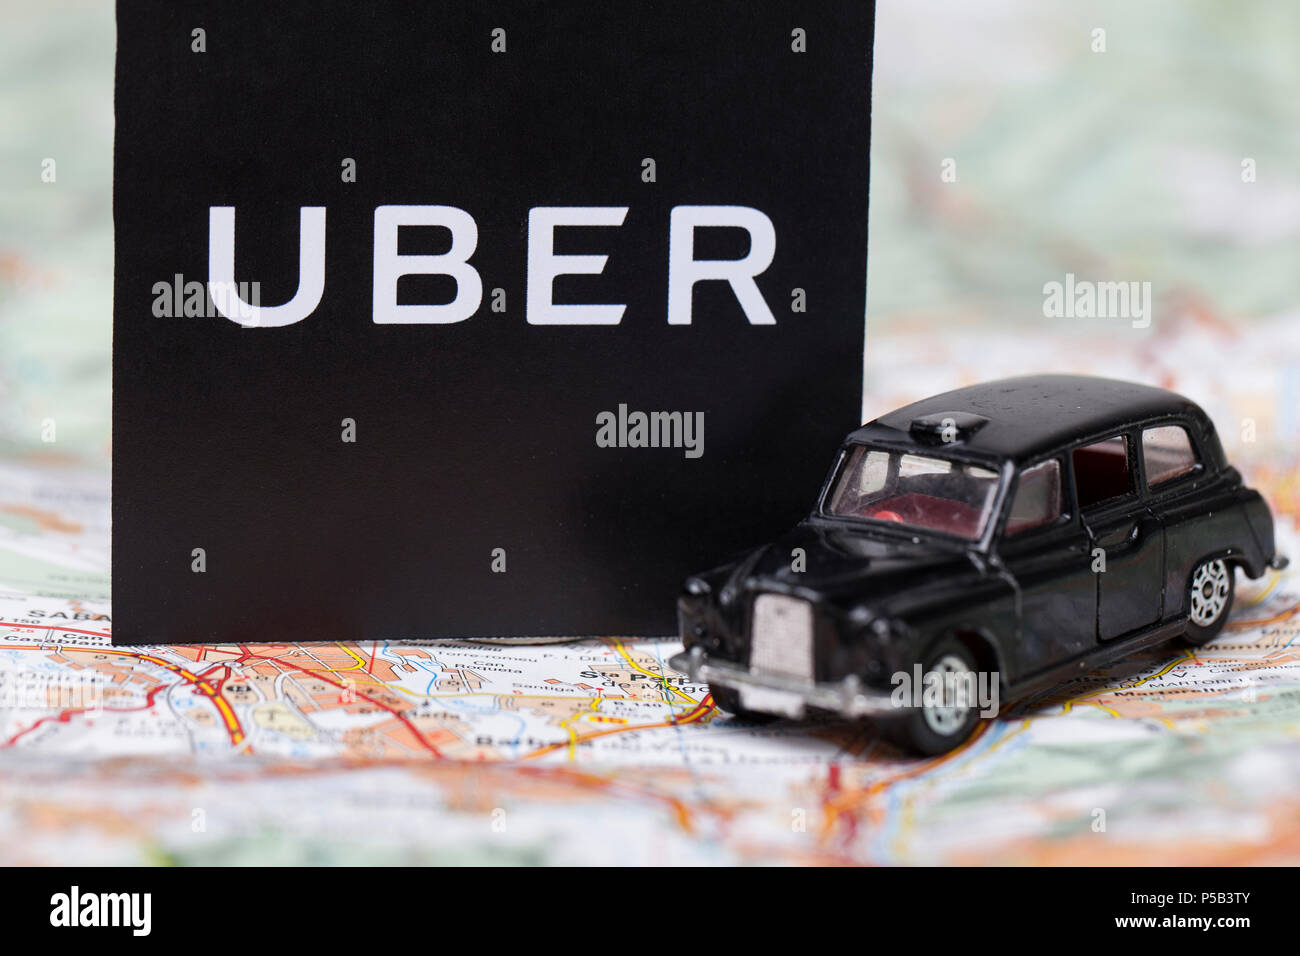 Londres, Reino Unido - 23 de marzo de 2017: Una fotografía de la Uber logotipo con un negro estilo londinense taxi coche de juguete. Uber es un popular servicio de transporte taxi estilo app Foto de stock